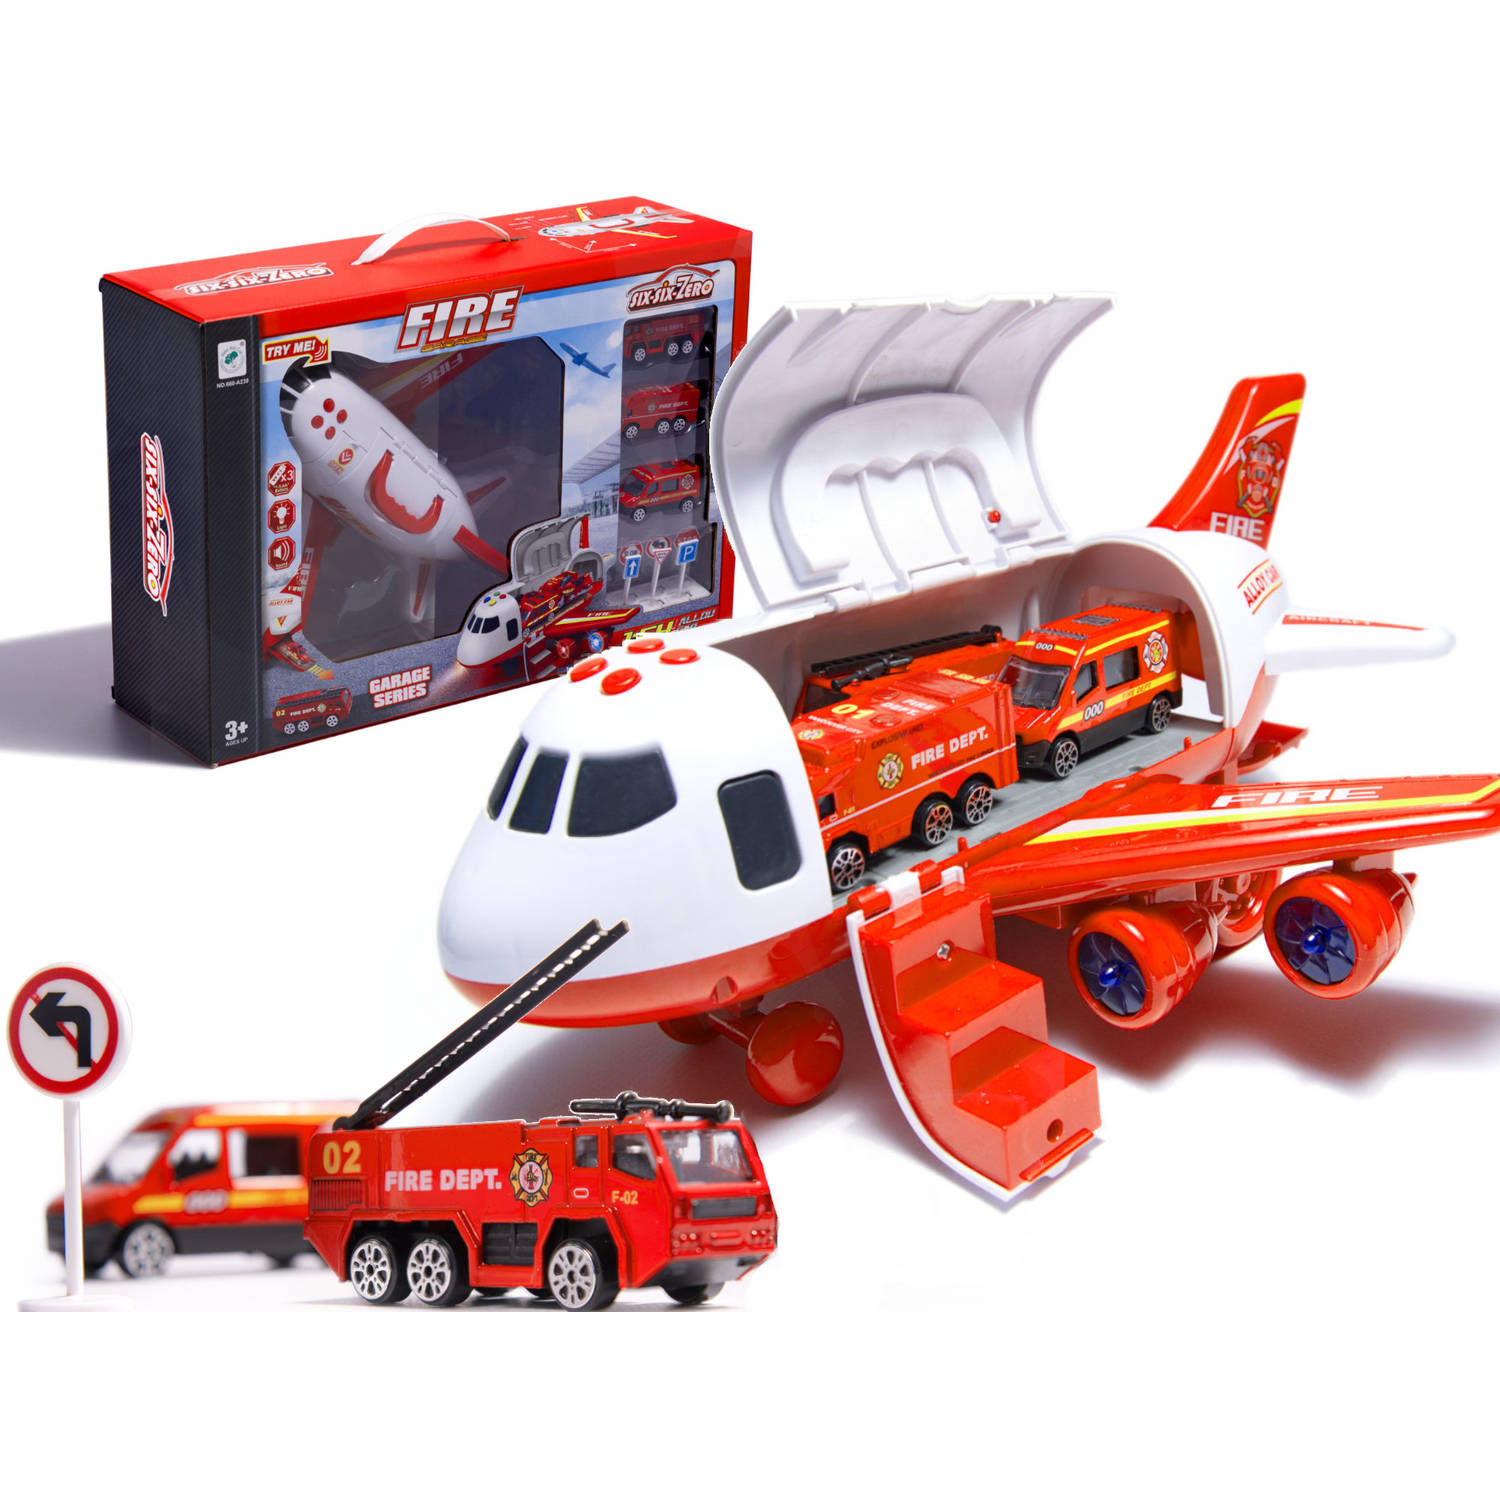 Plateau Technologie Ellendig Speelgoed vliegtuig met licht en geluid + 3 brandweer voertuigen | Blokker